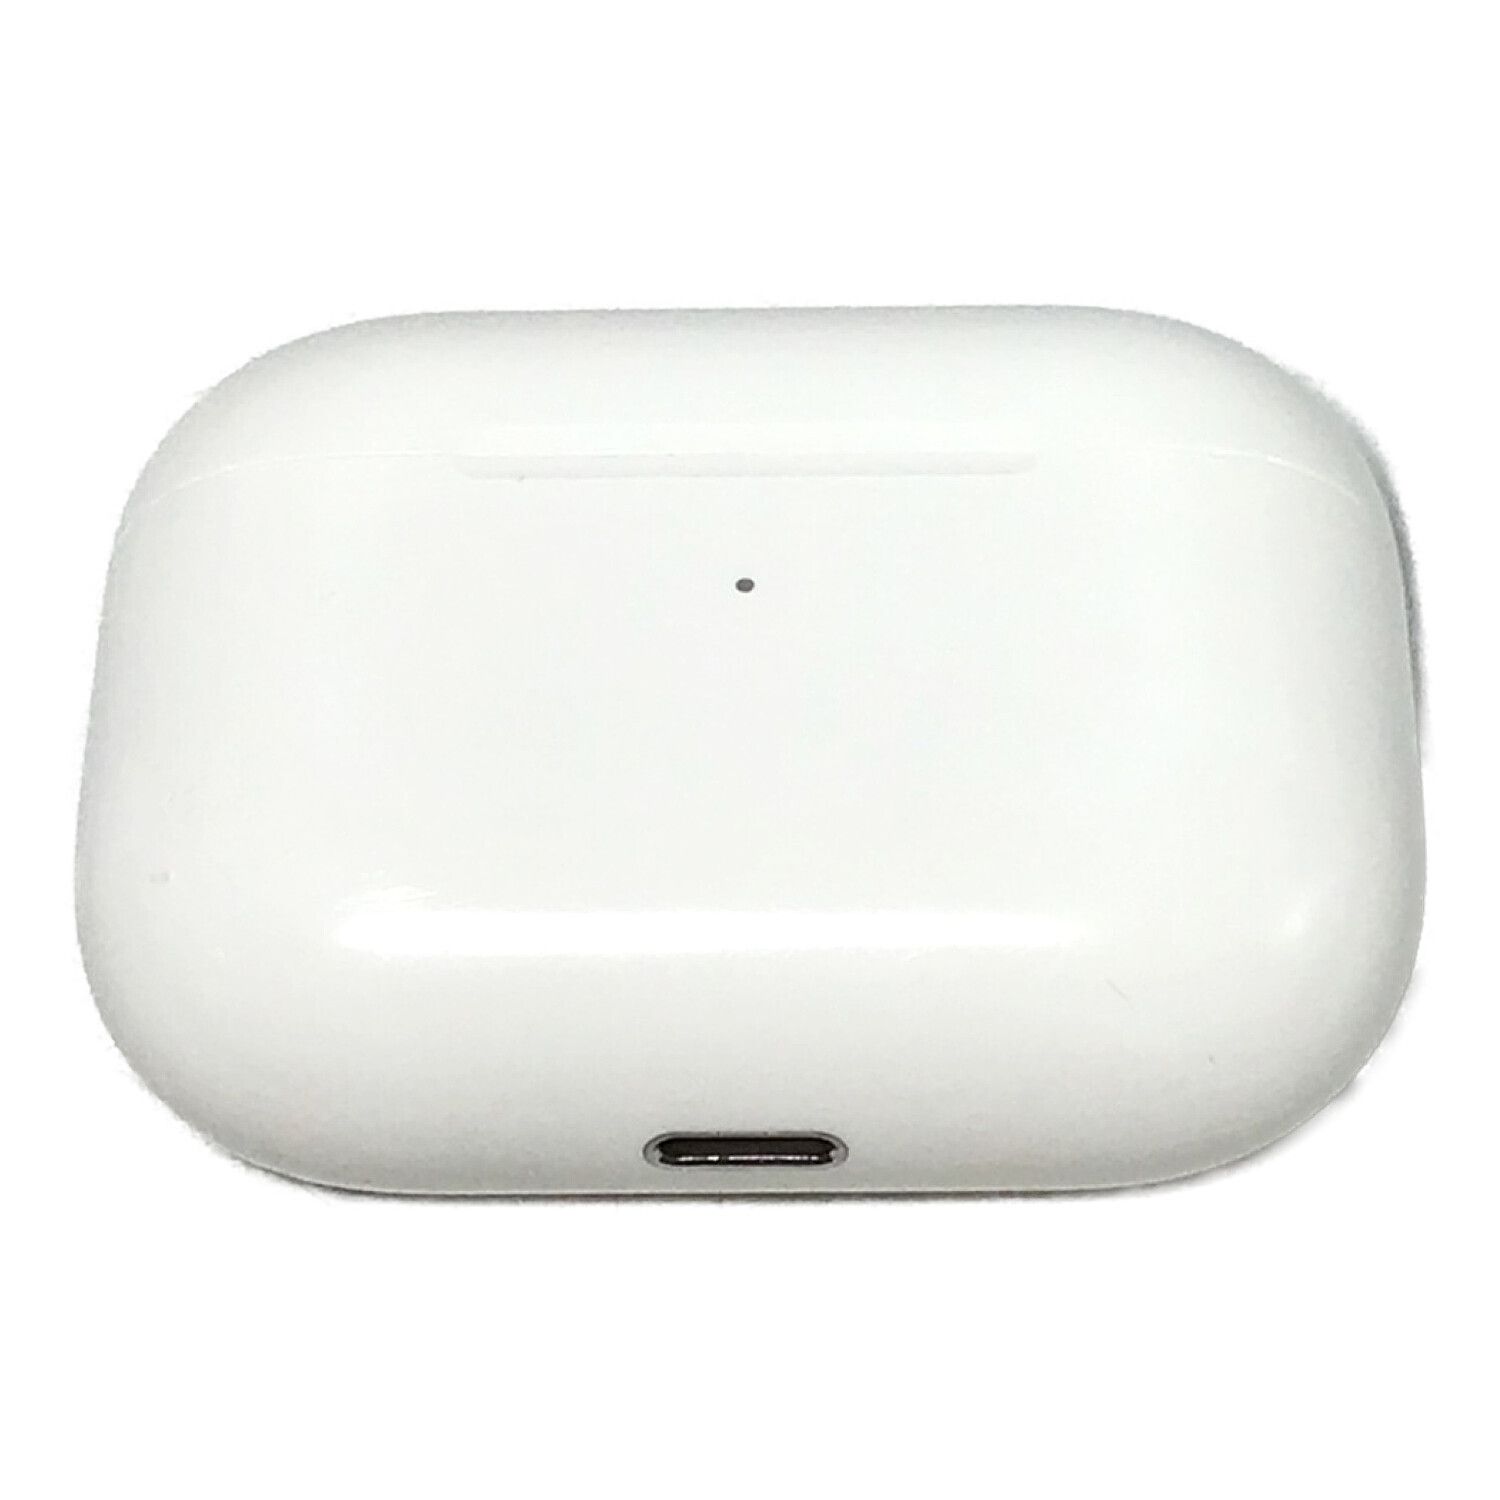 Apple (アップル) ワイヤレスイヤホン AirPods Pro MWP22J/A